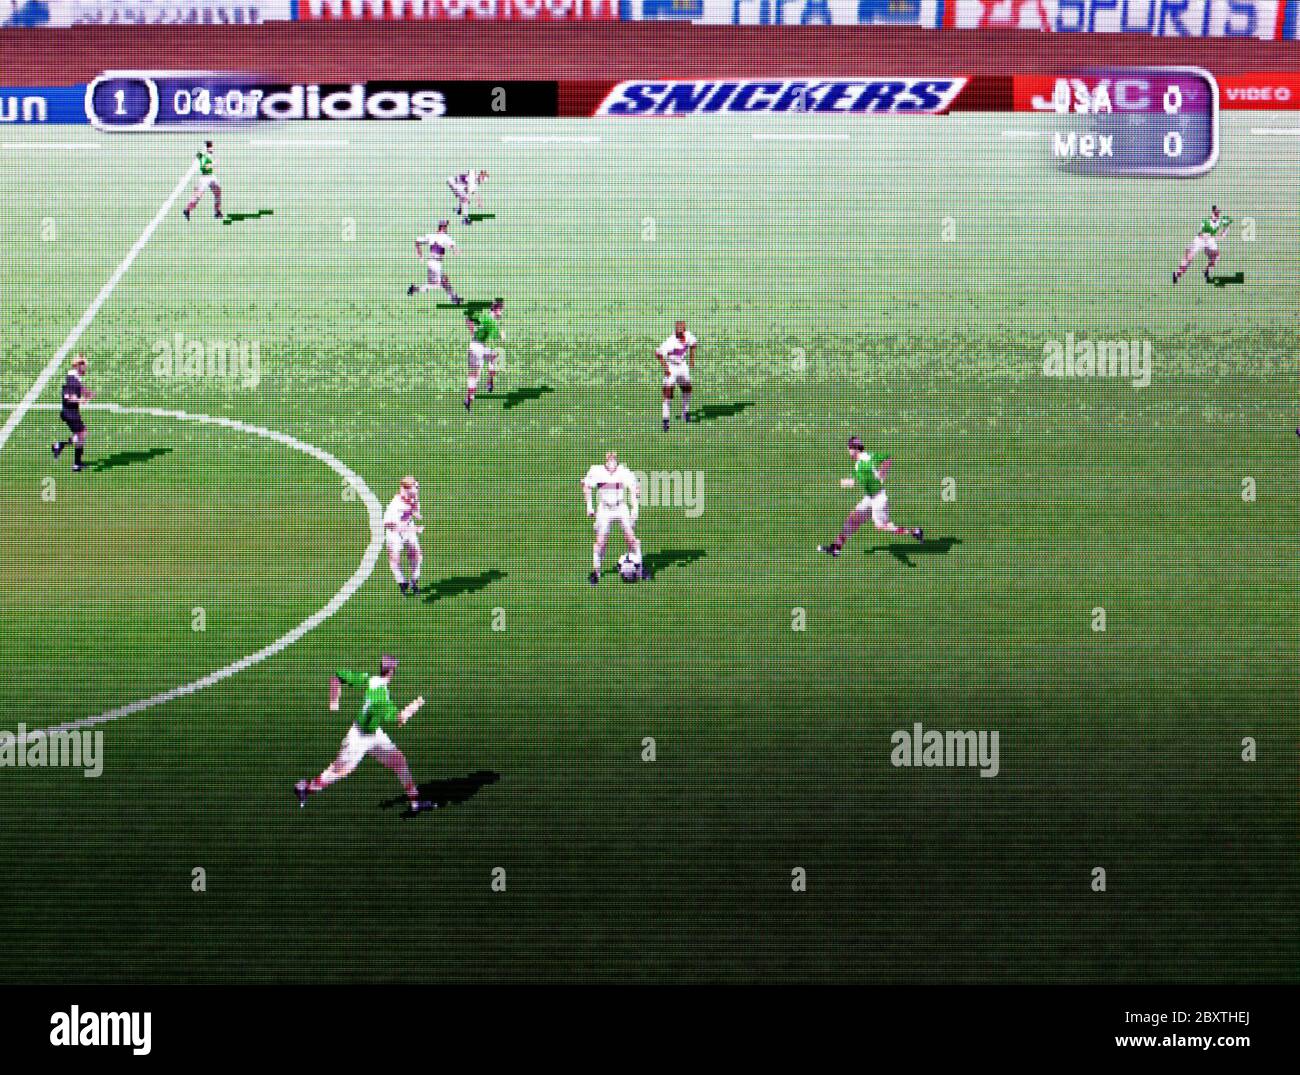 FIFA 98 Road to World Cup - Nintendo 64 Videospiel - nur für redaktionelle  Verwendung Stockfotografie - Alamy